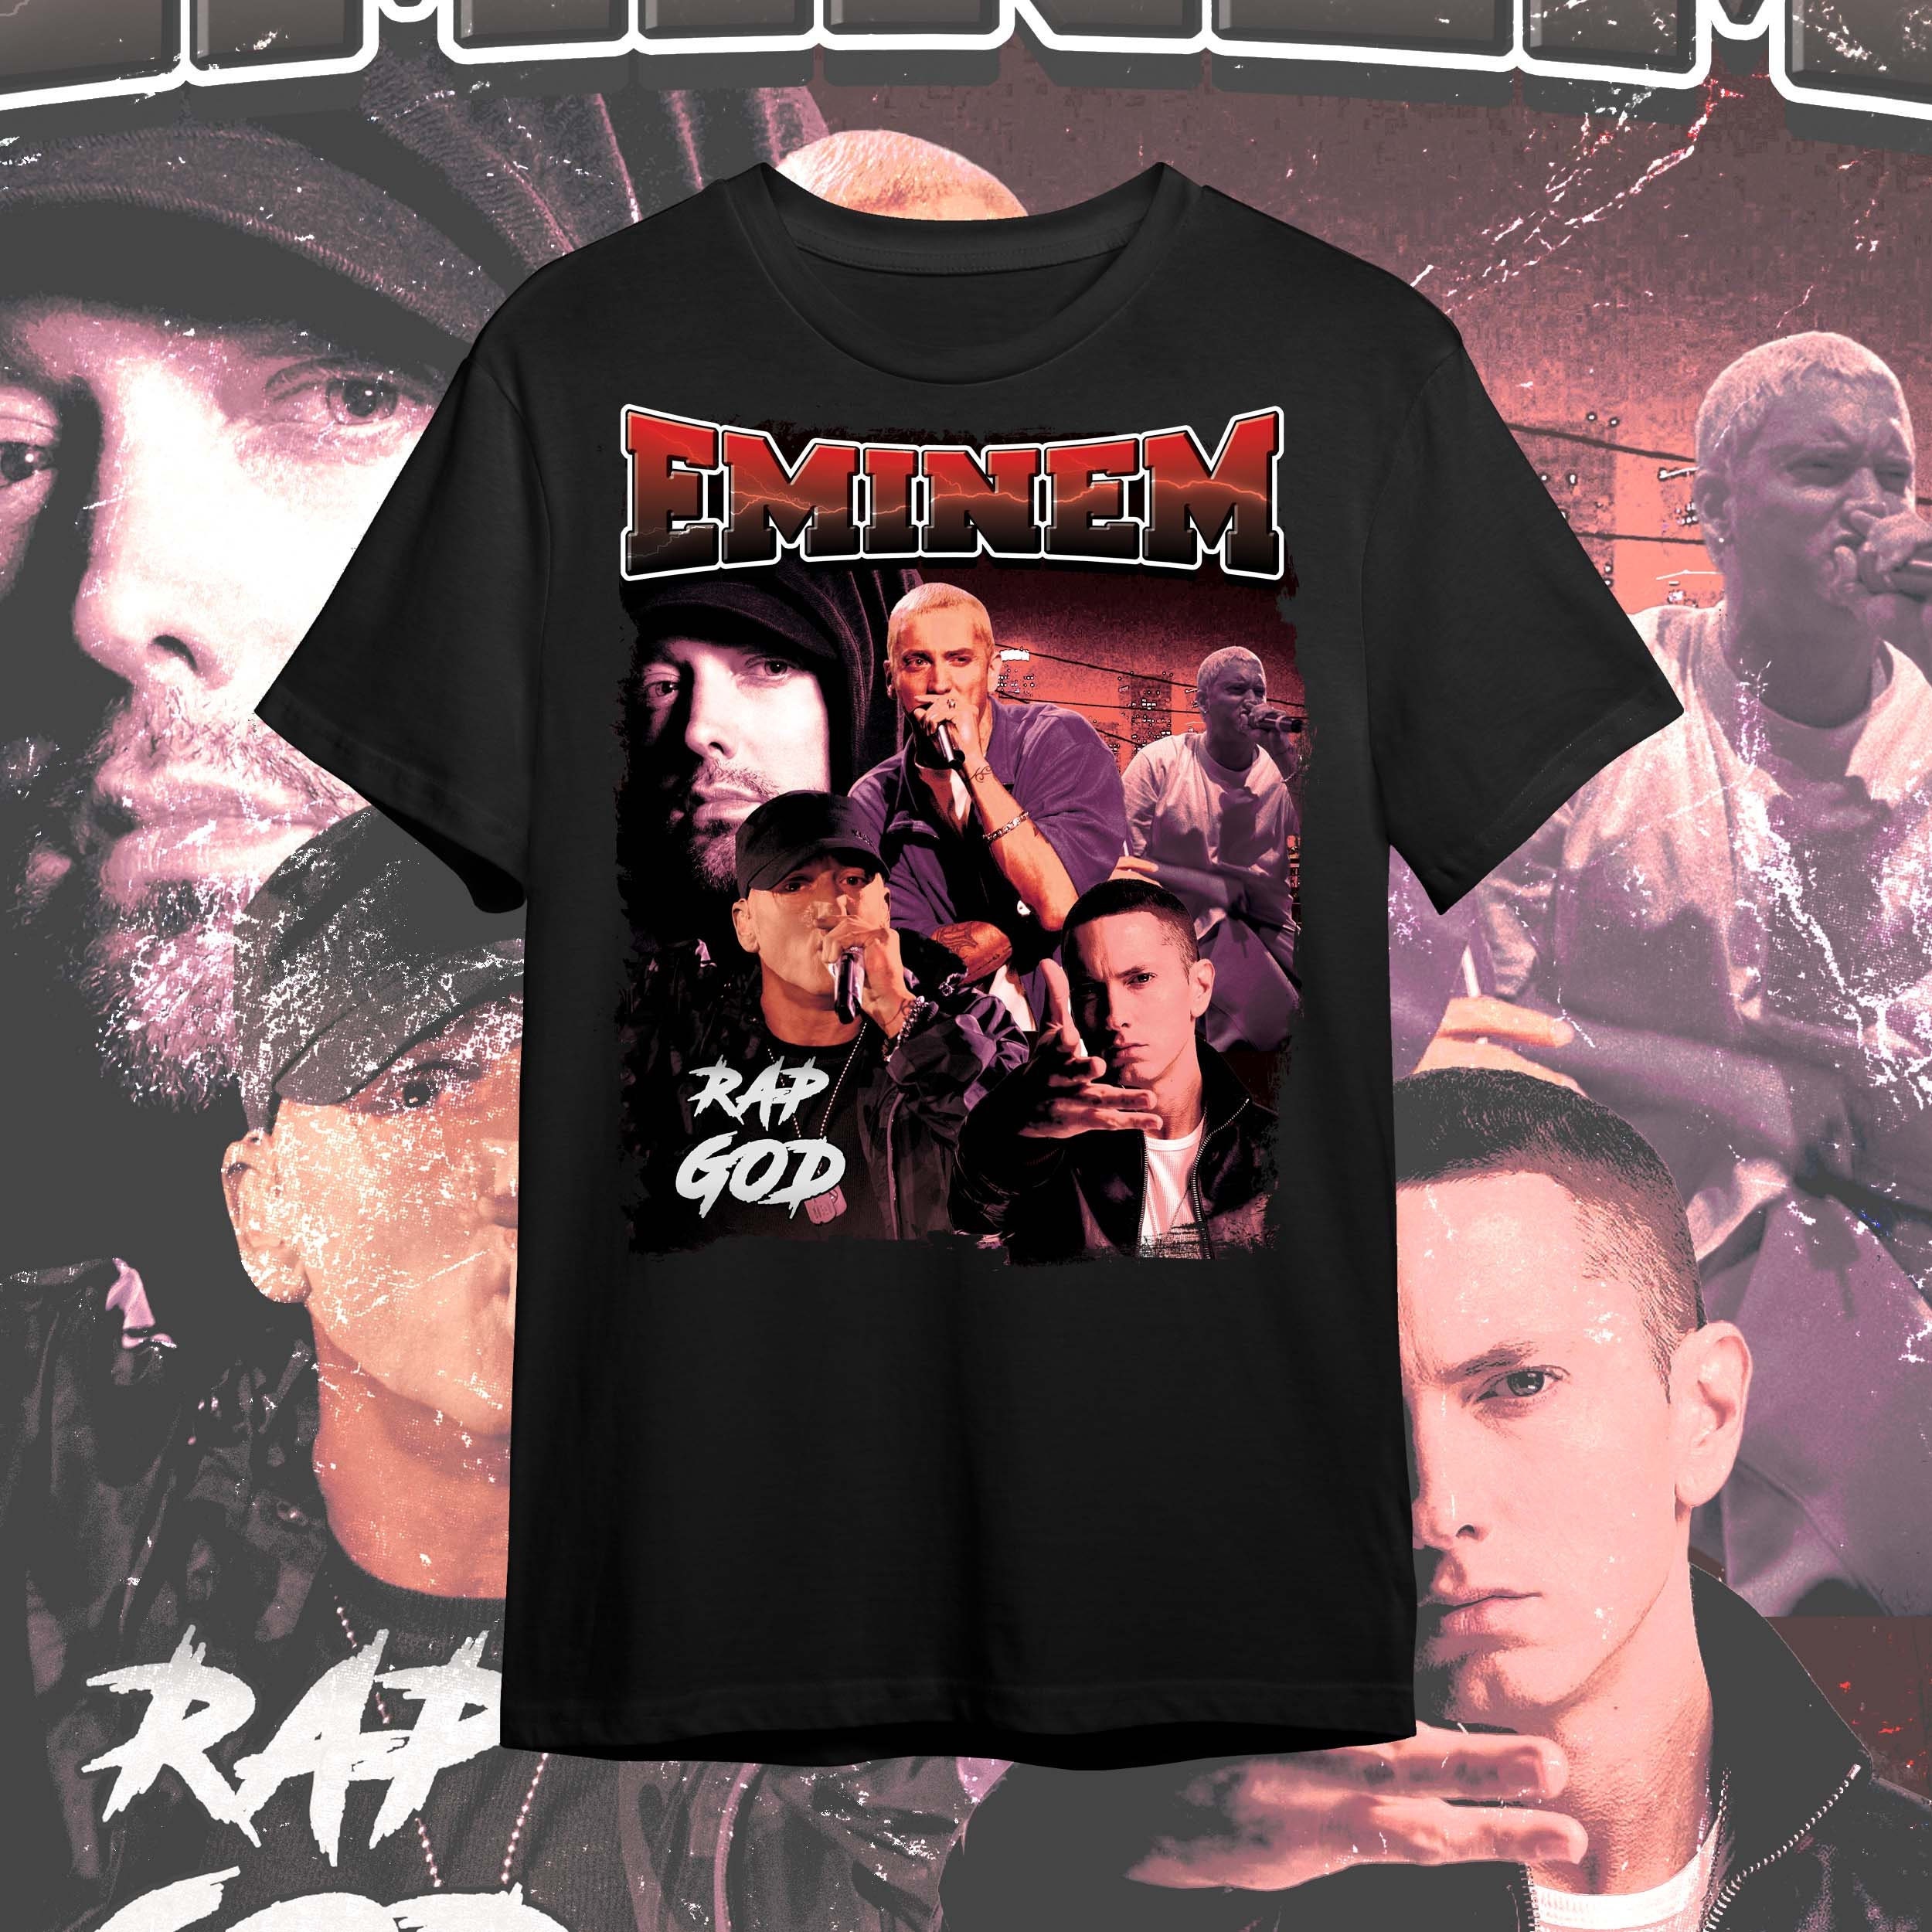 90s Eminem Shirt - Etsy